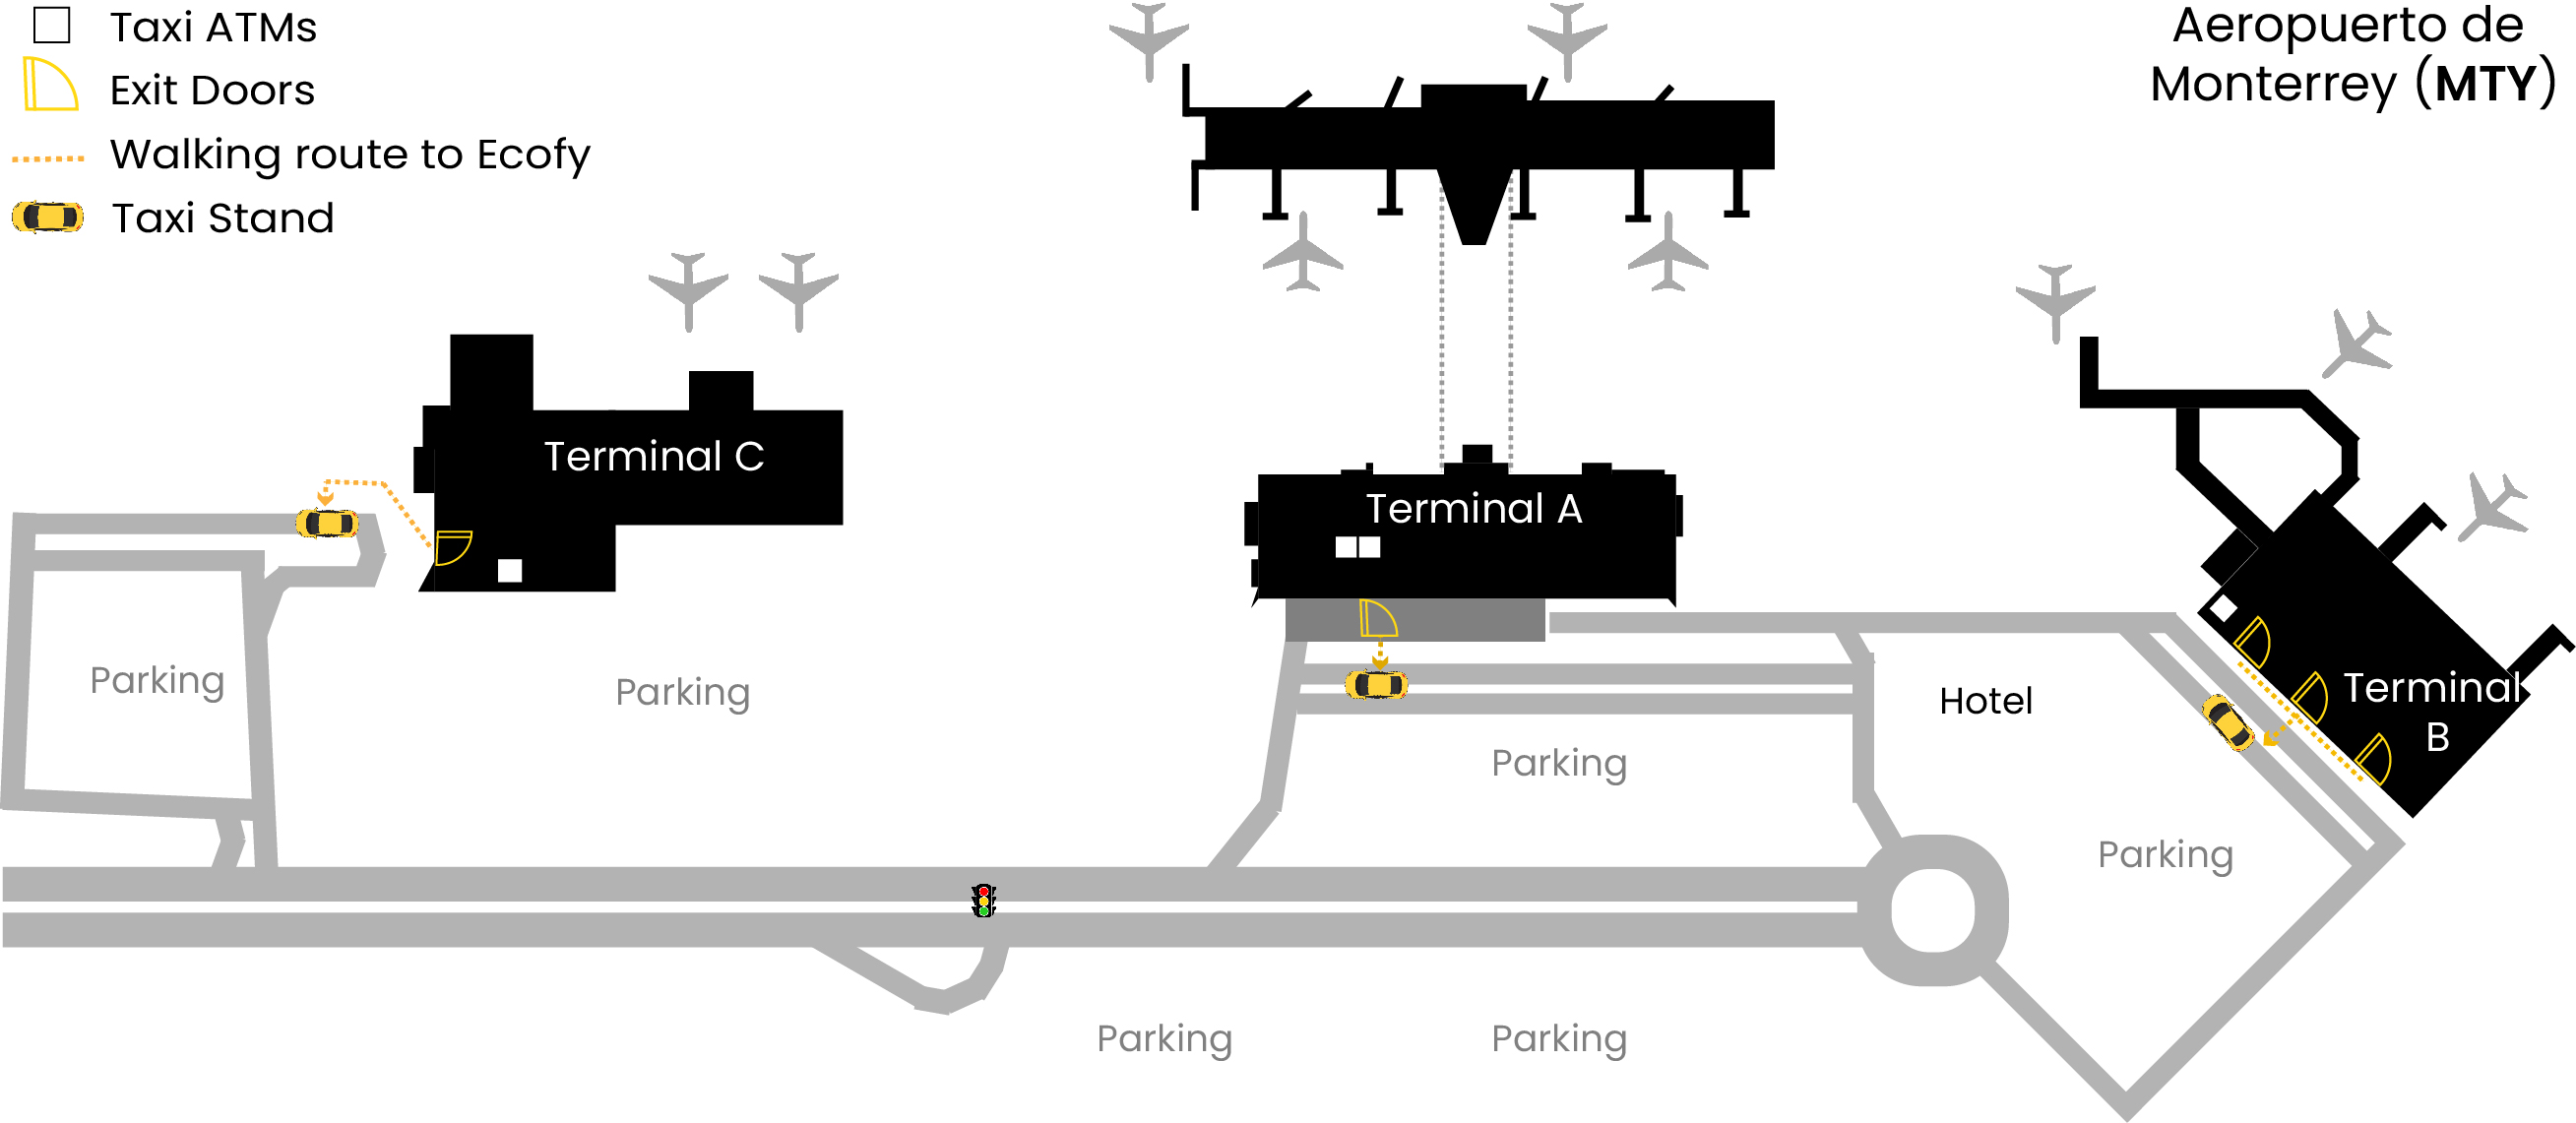 Mapa de aeropuerto de Monterrey